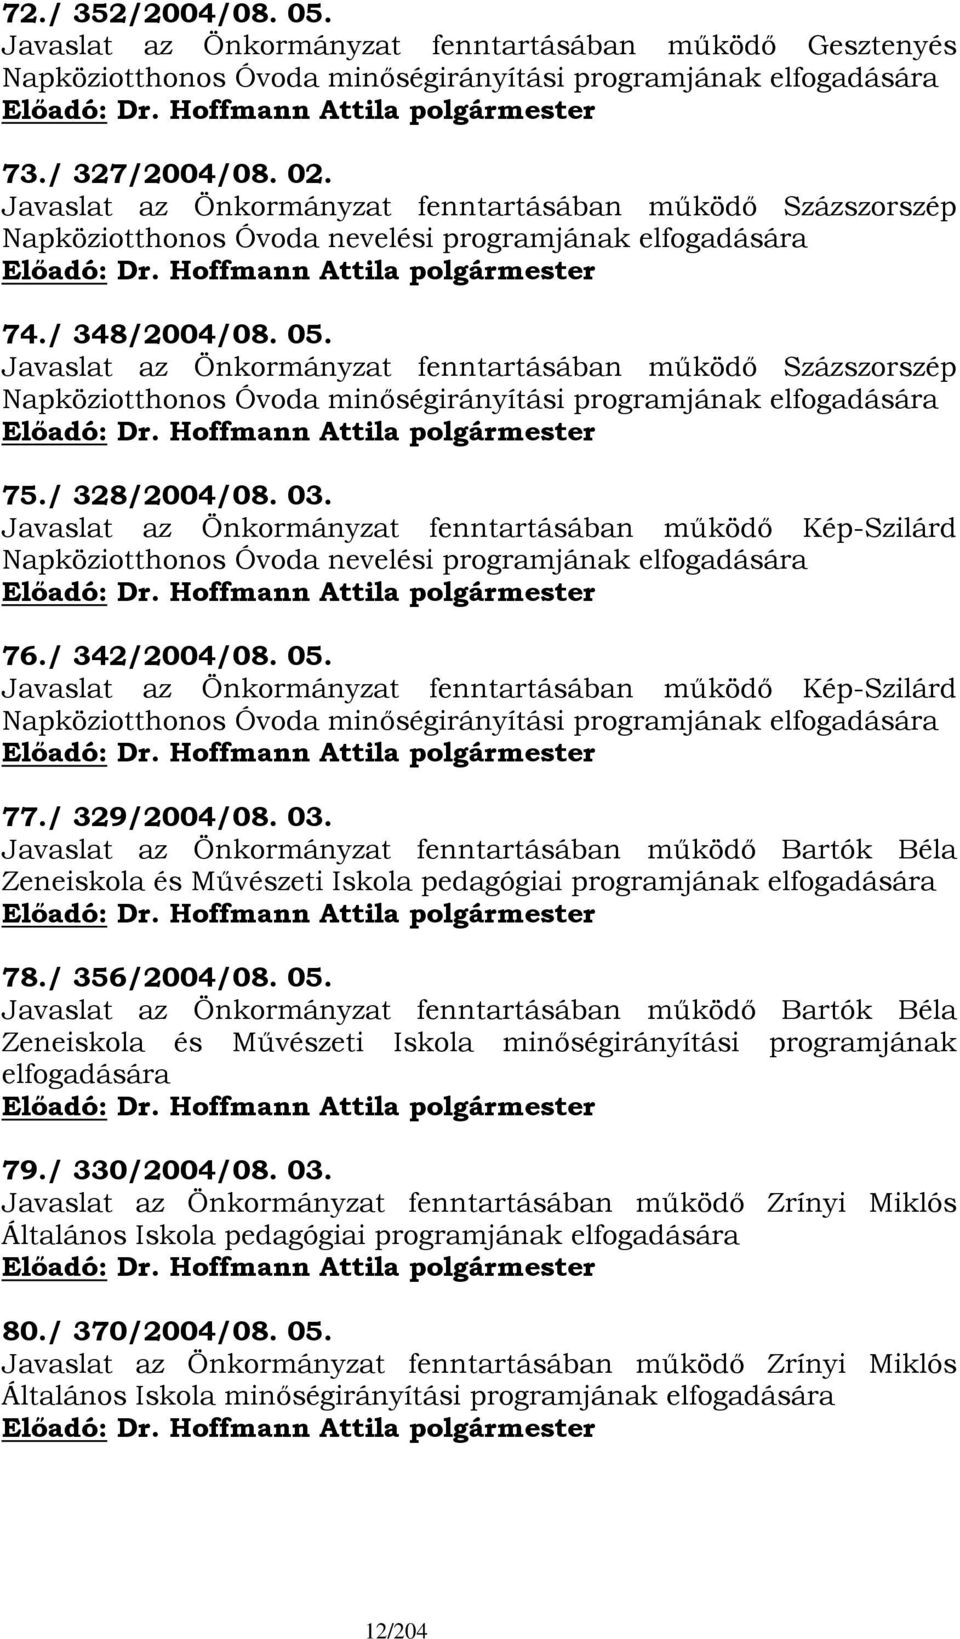 Javaslat az Önkormányzat fenntartásában működő Százszorszép Napköziotthonos Óvoda minőségirányítási programjának elfogadására 75./ 328/2004/08. 03.